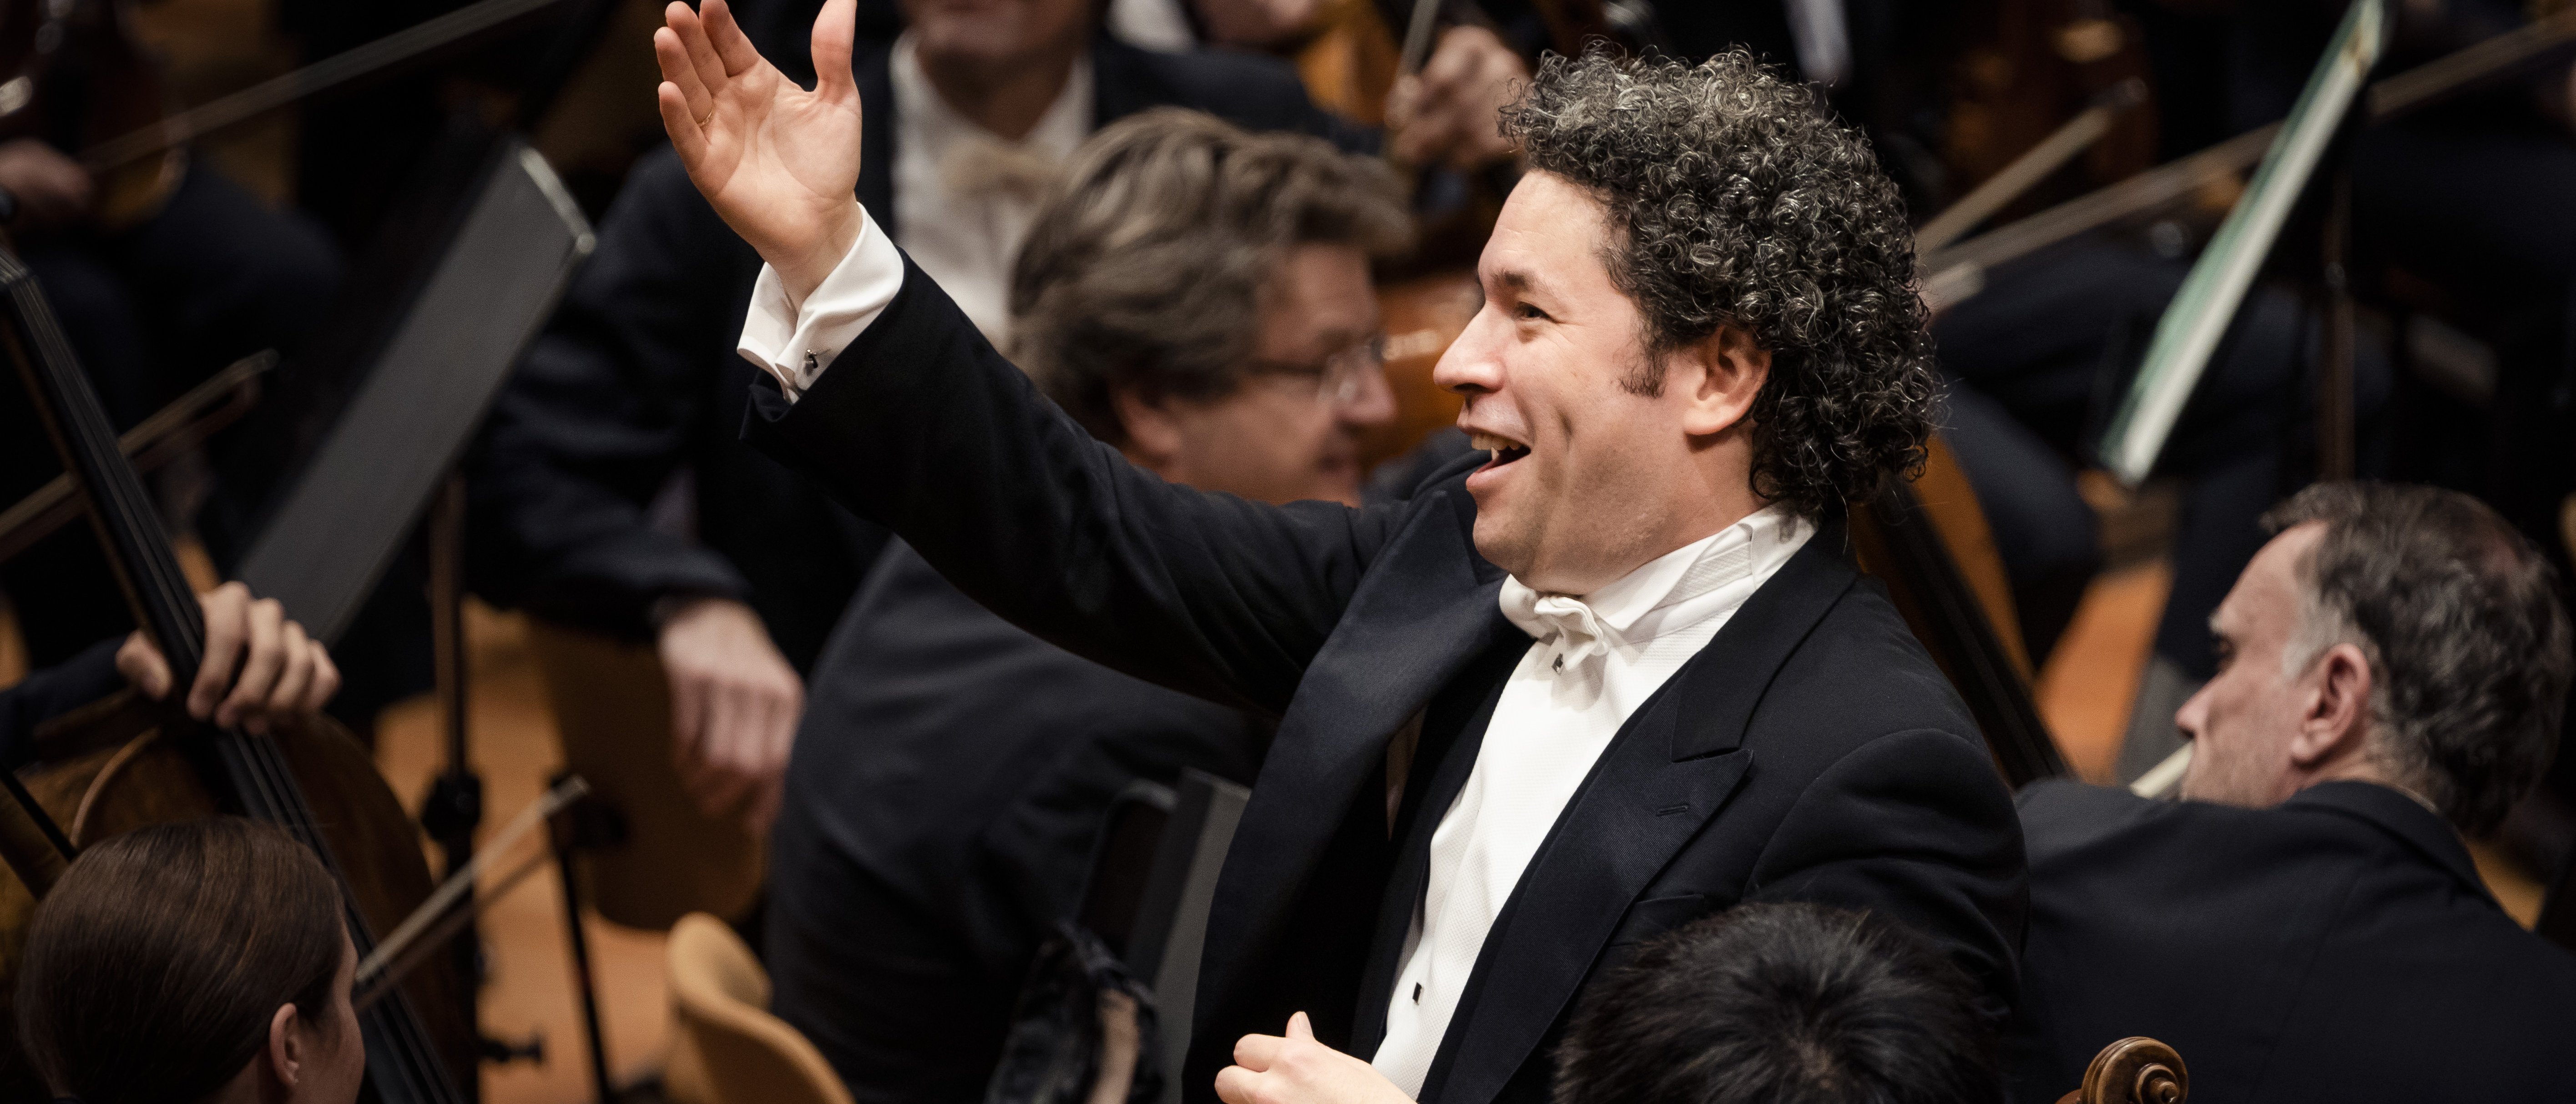 Gustavo Dudamel conducting